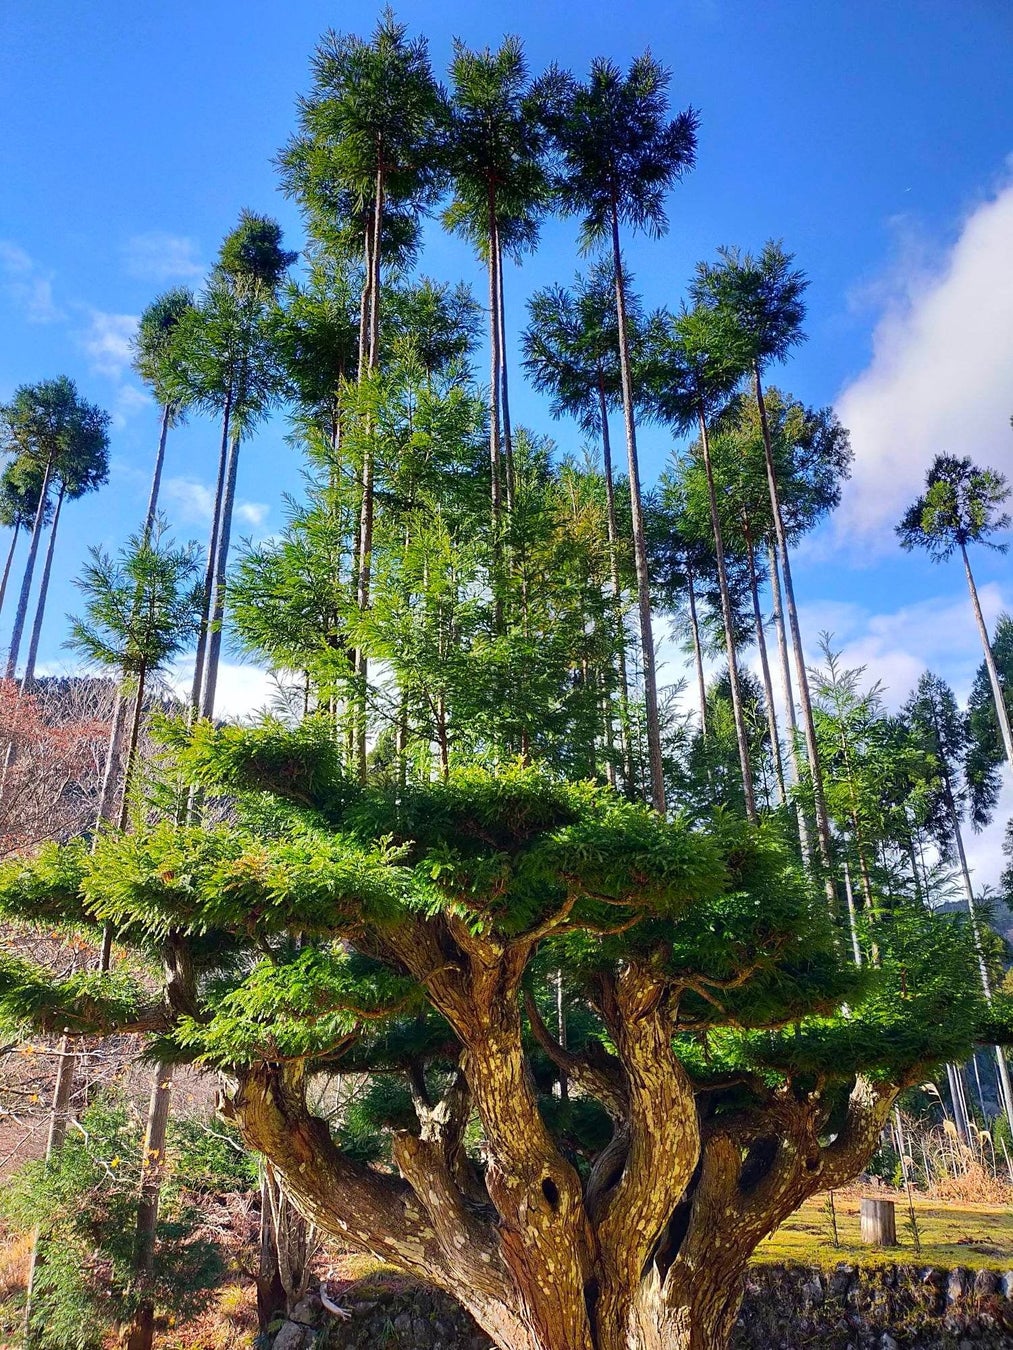 北山杉を活用したオフィスエントランスが完成 のサブ画像2_垂木丸太の生産を目的に600余年の歴史を持つとされる育林方法。この大台杉は樹齢450年とされる 